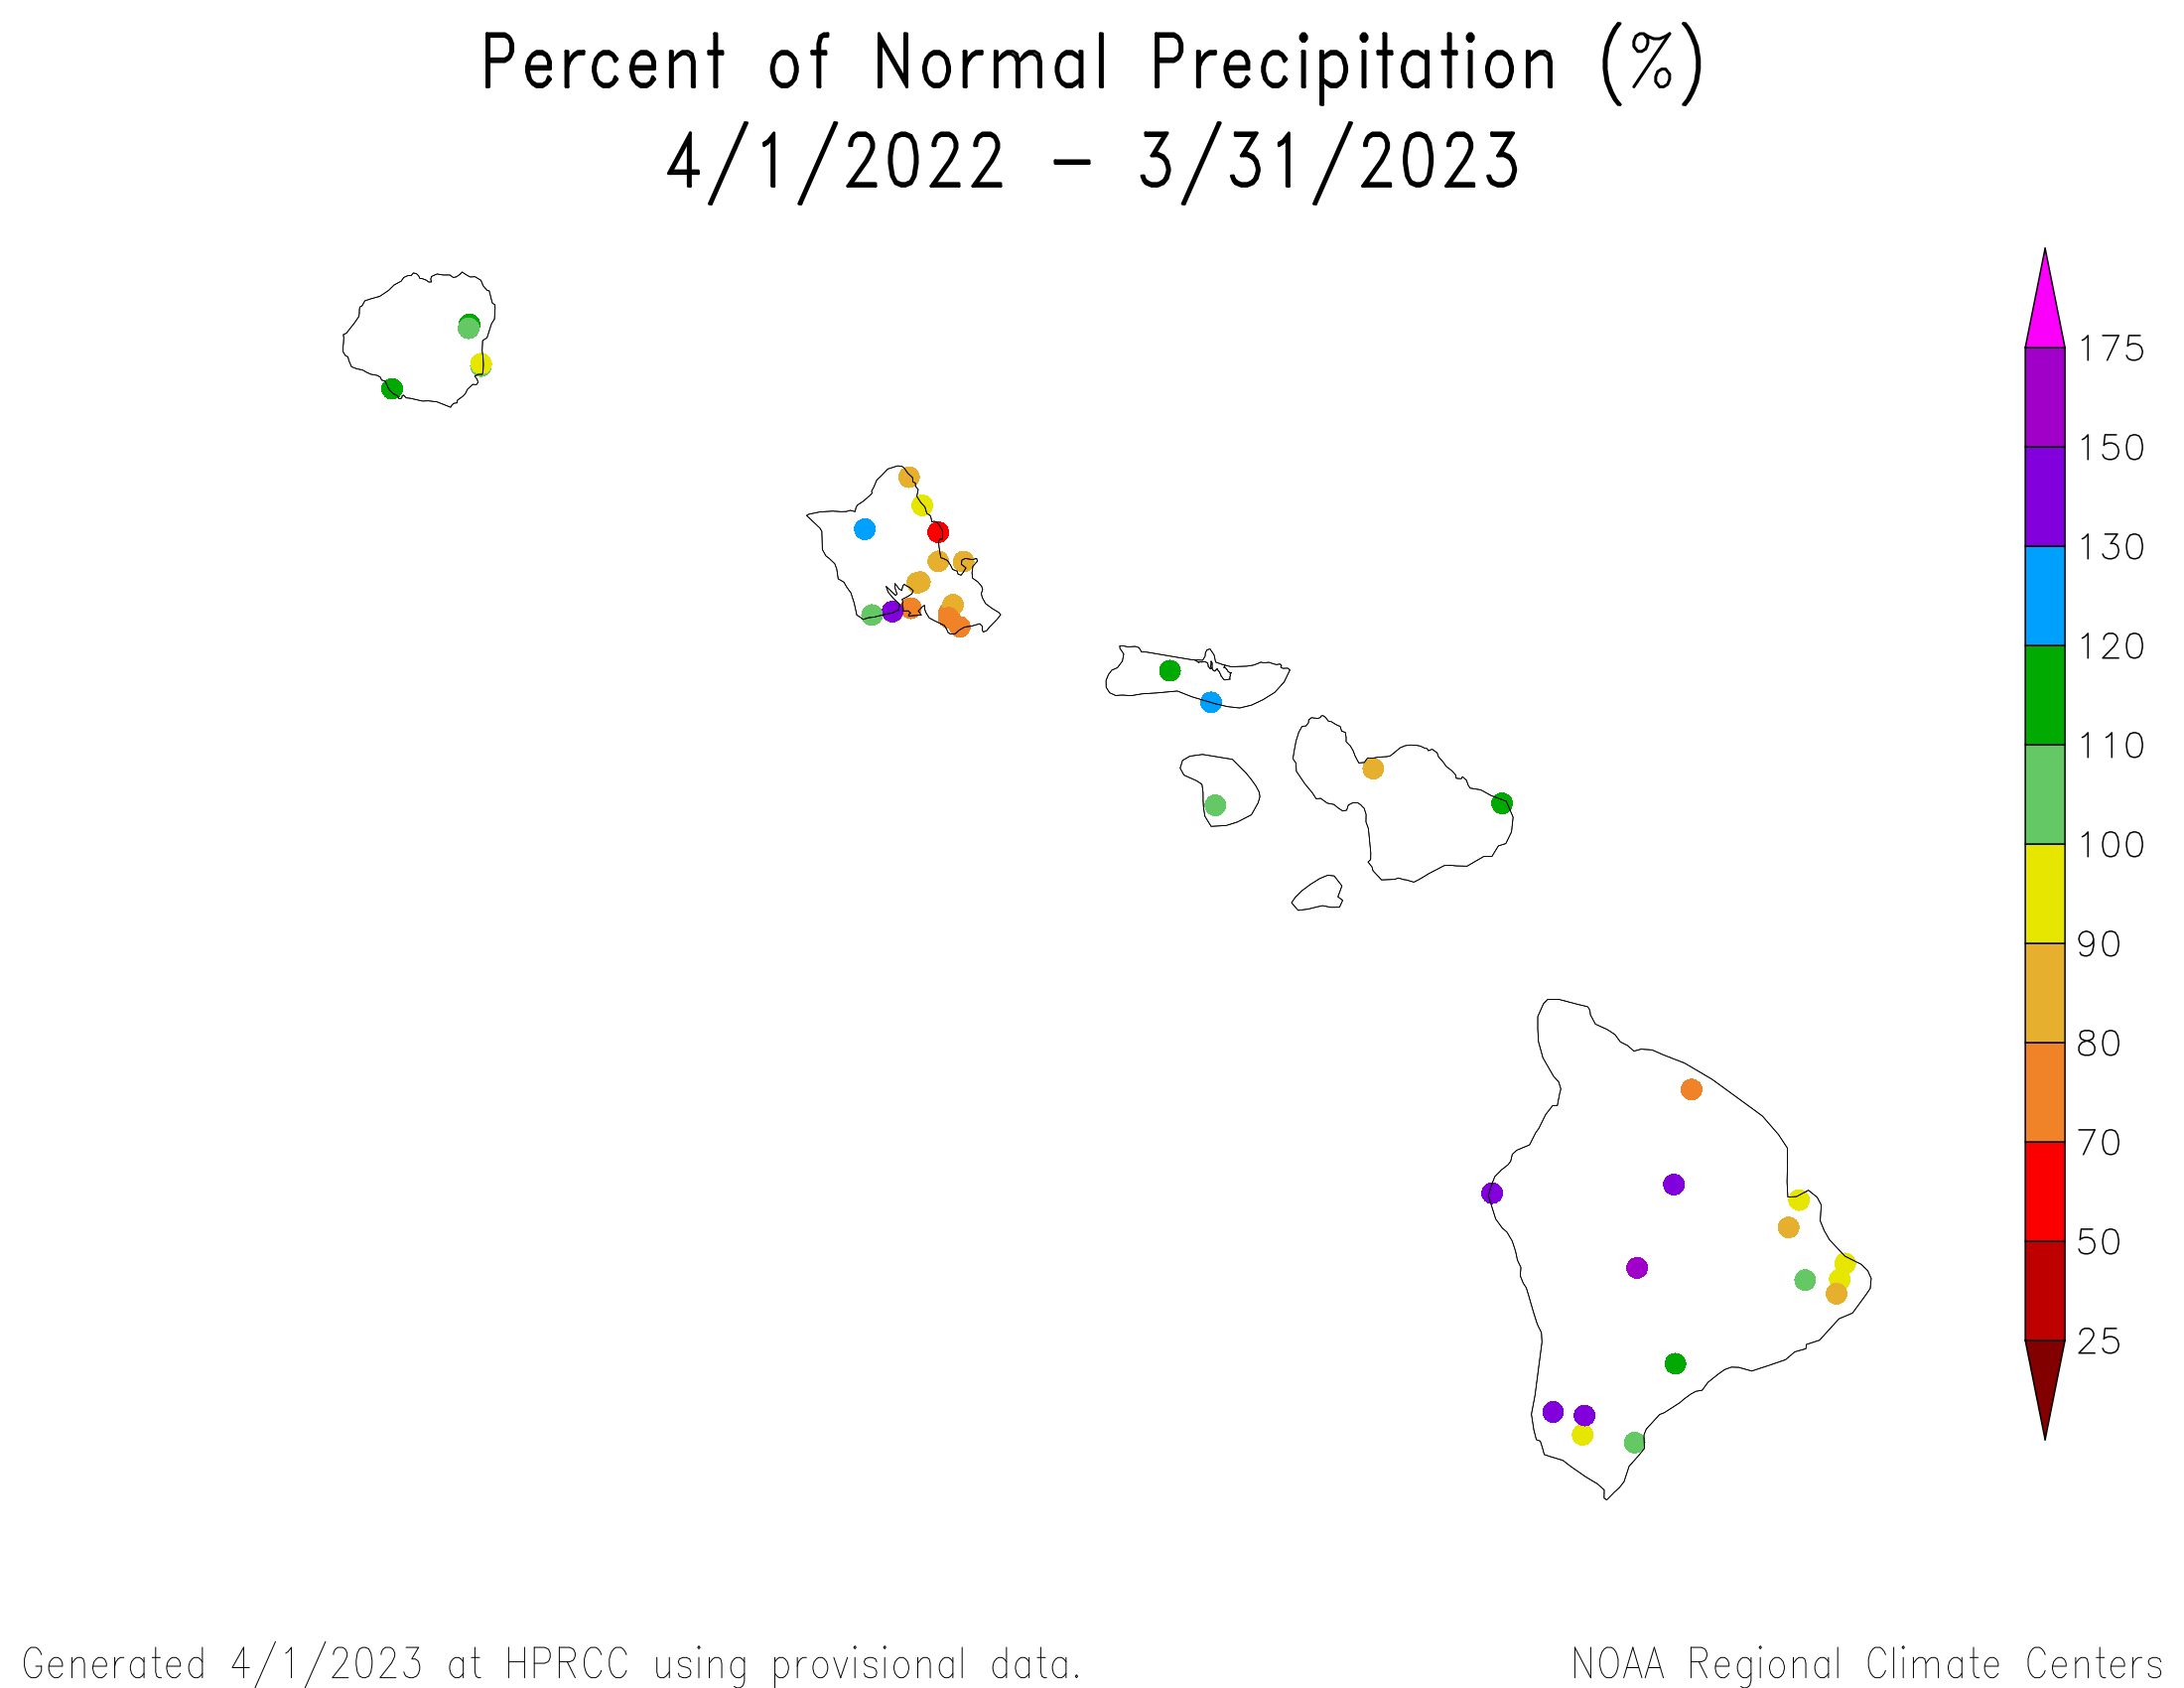 Hawaii Percent of Normal Precipitation, April 2022-March 2023